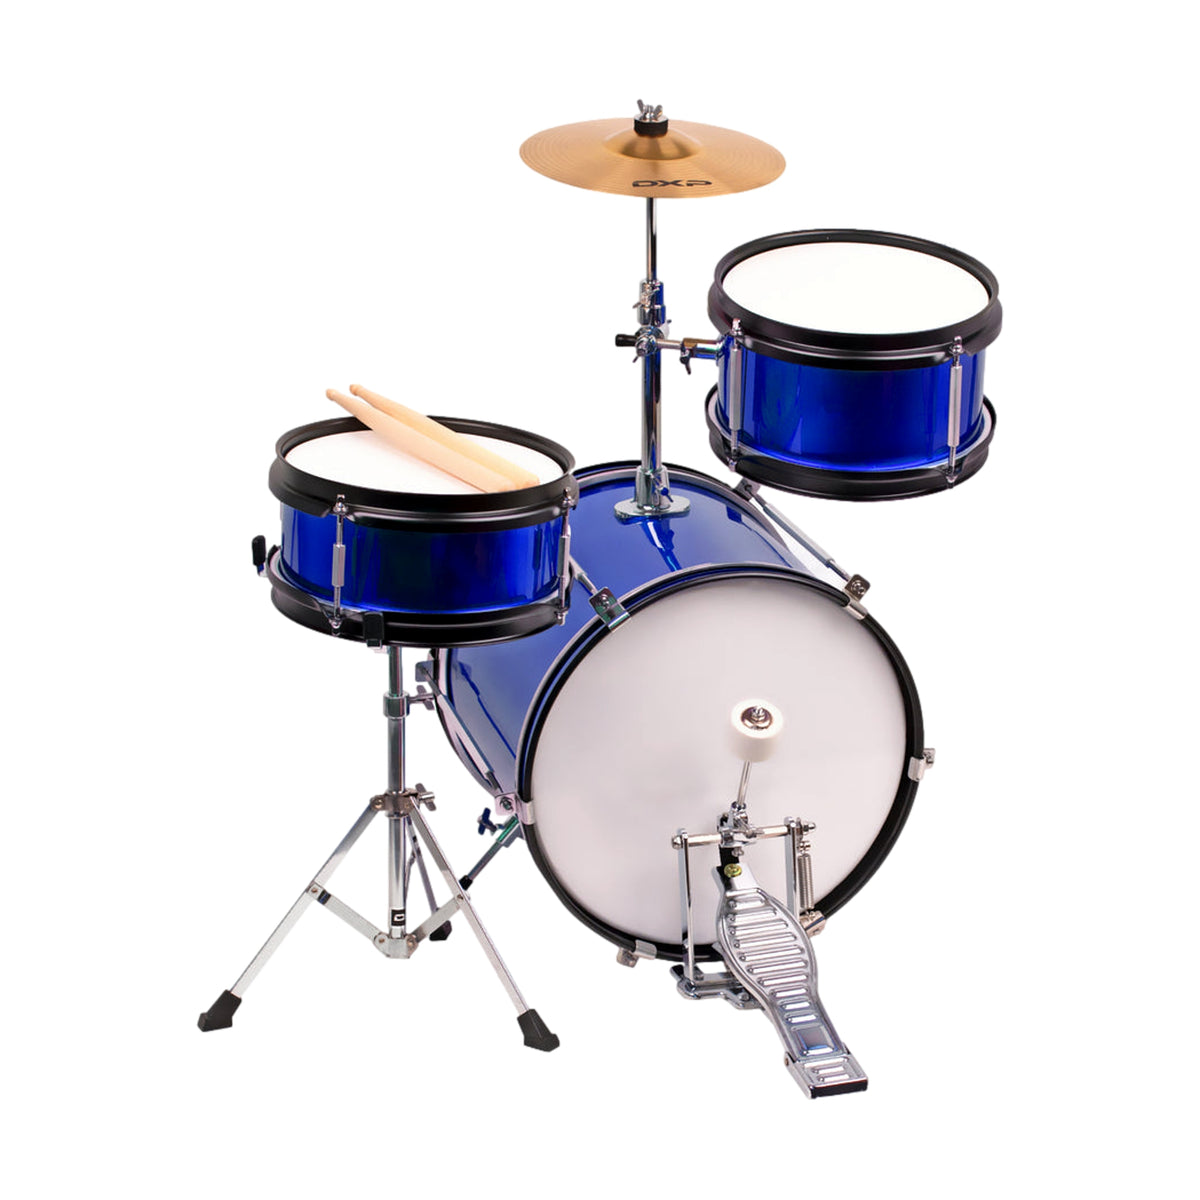 DXP Junior Drum Kit 3 Pce 12 Inch Bd Metallic Blue